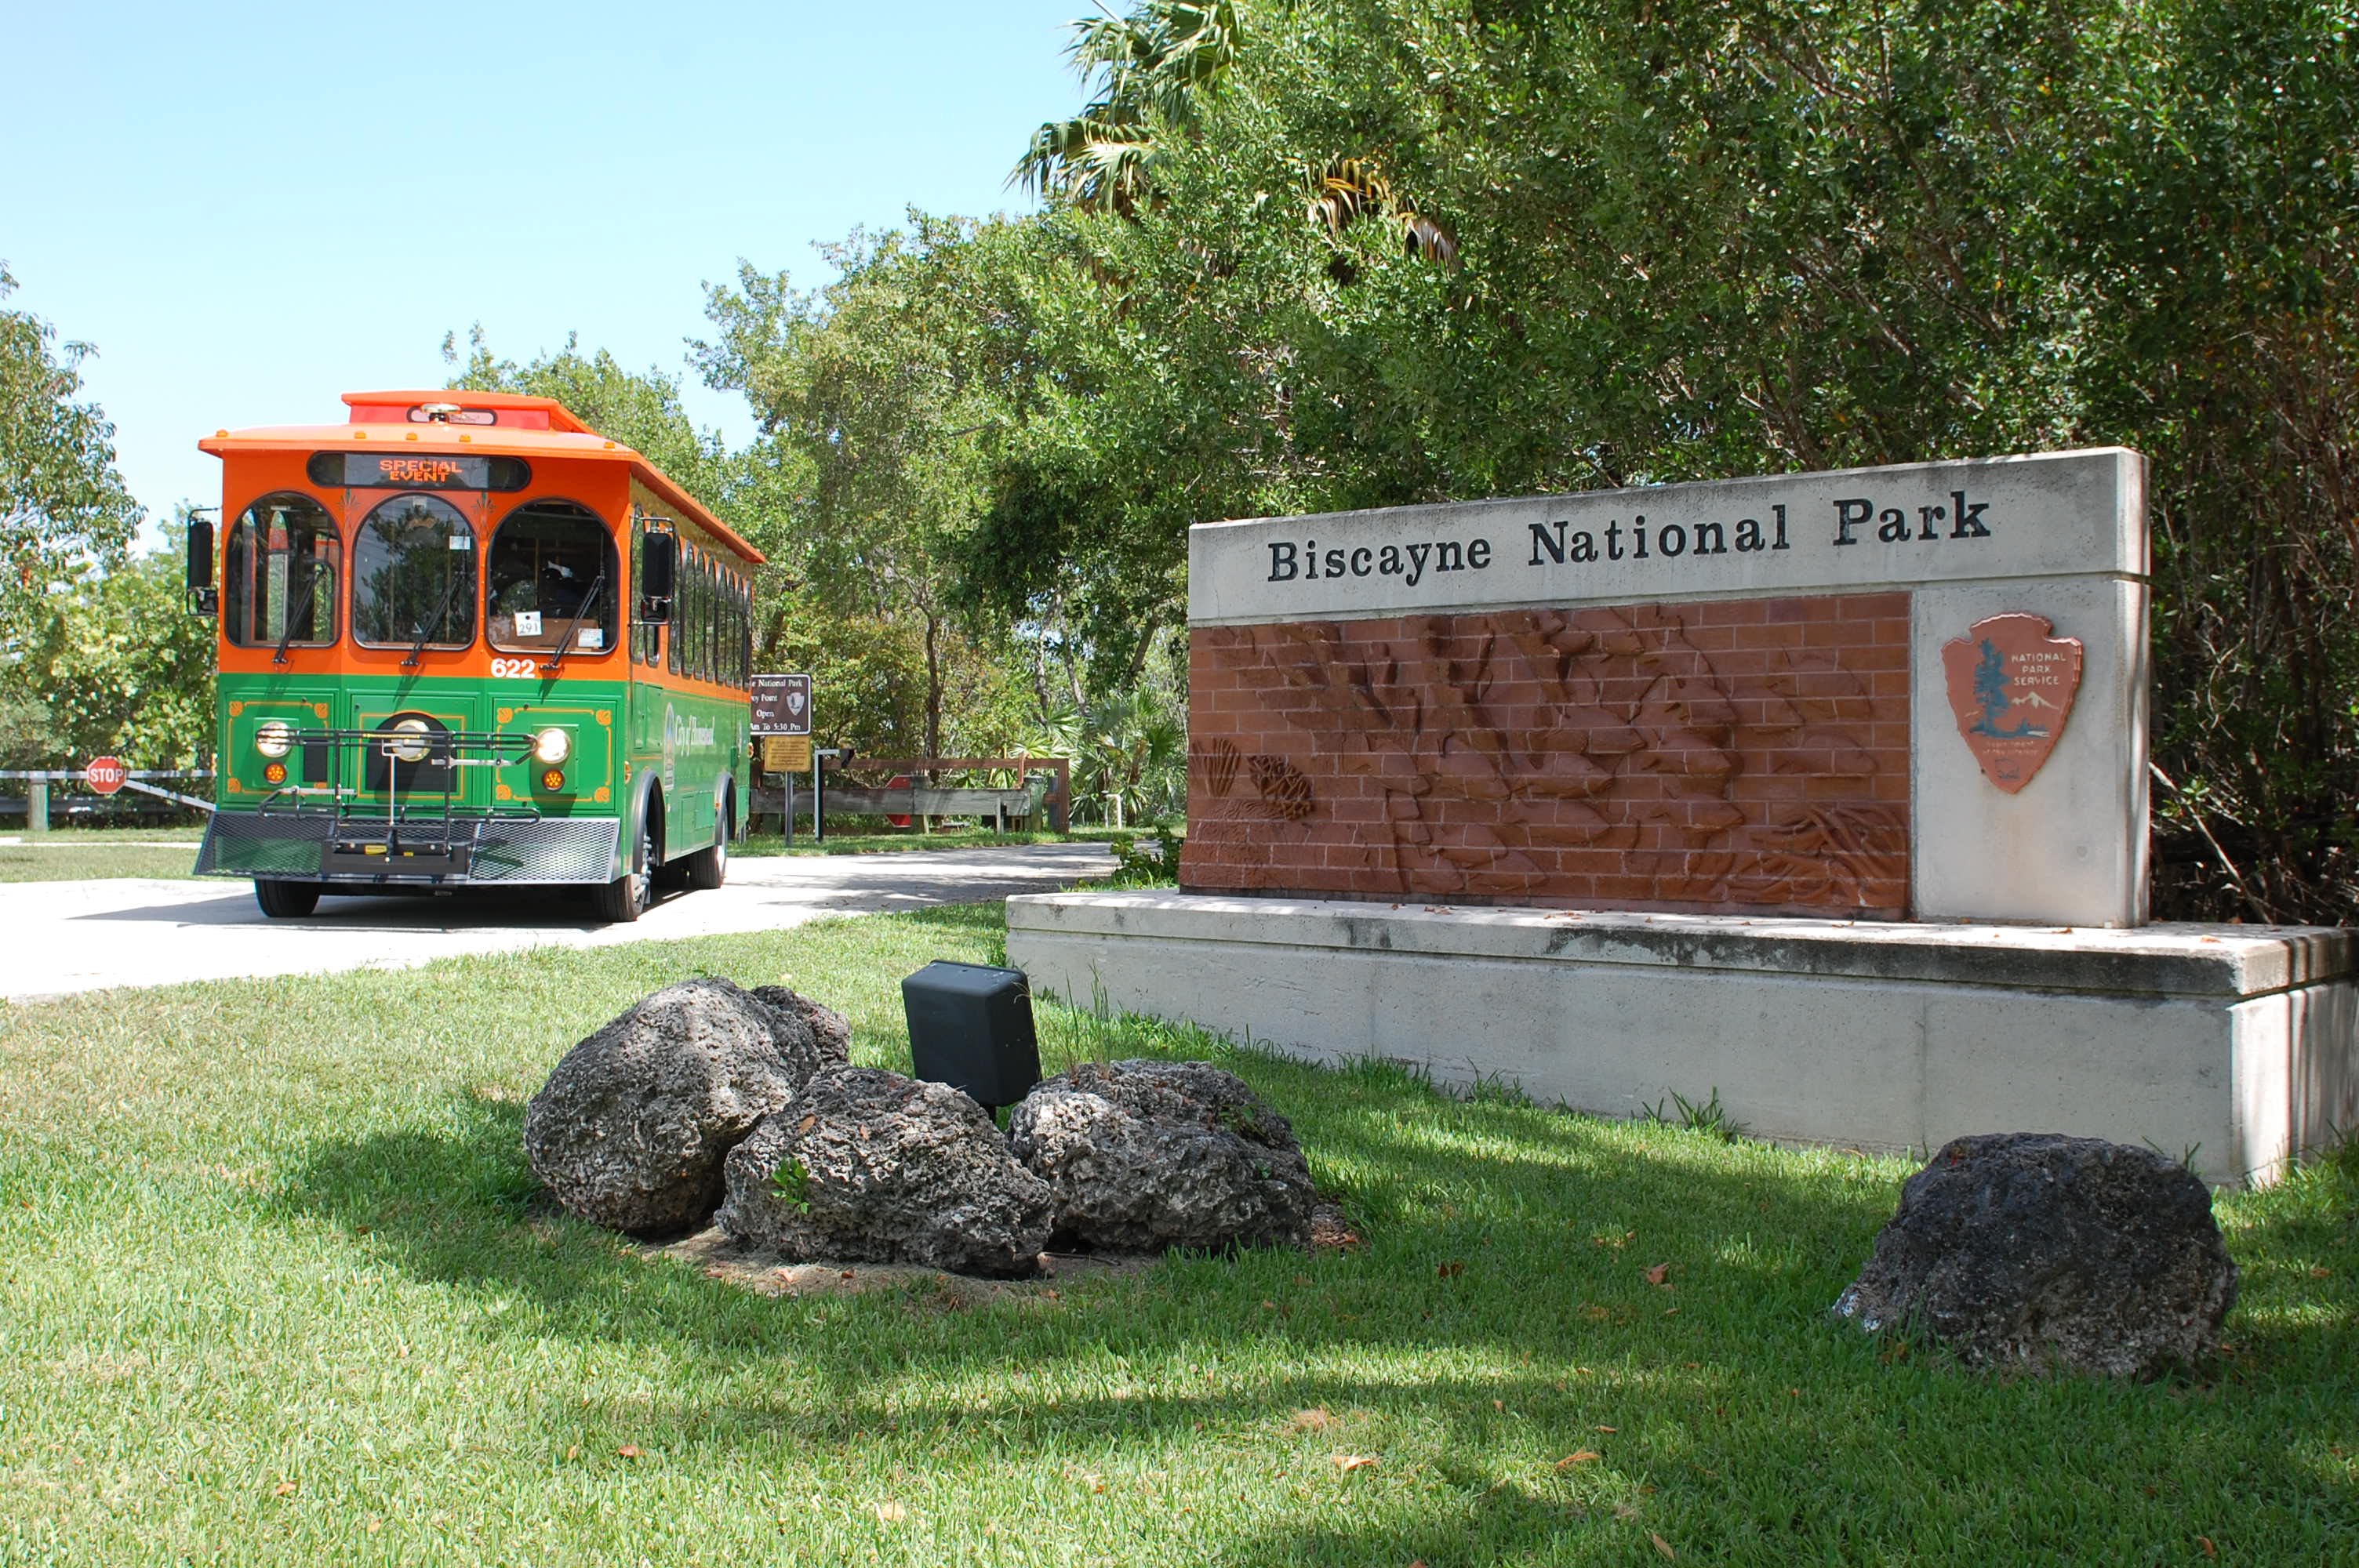 Homestead National Parks Trolley at Biscayne National Park entrance.